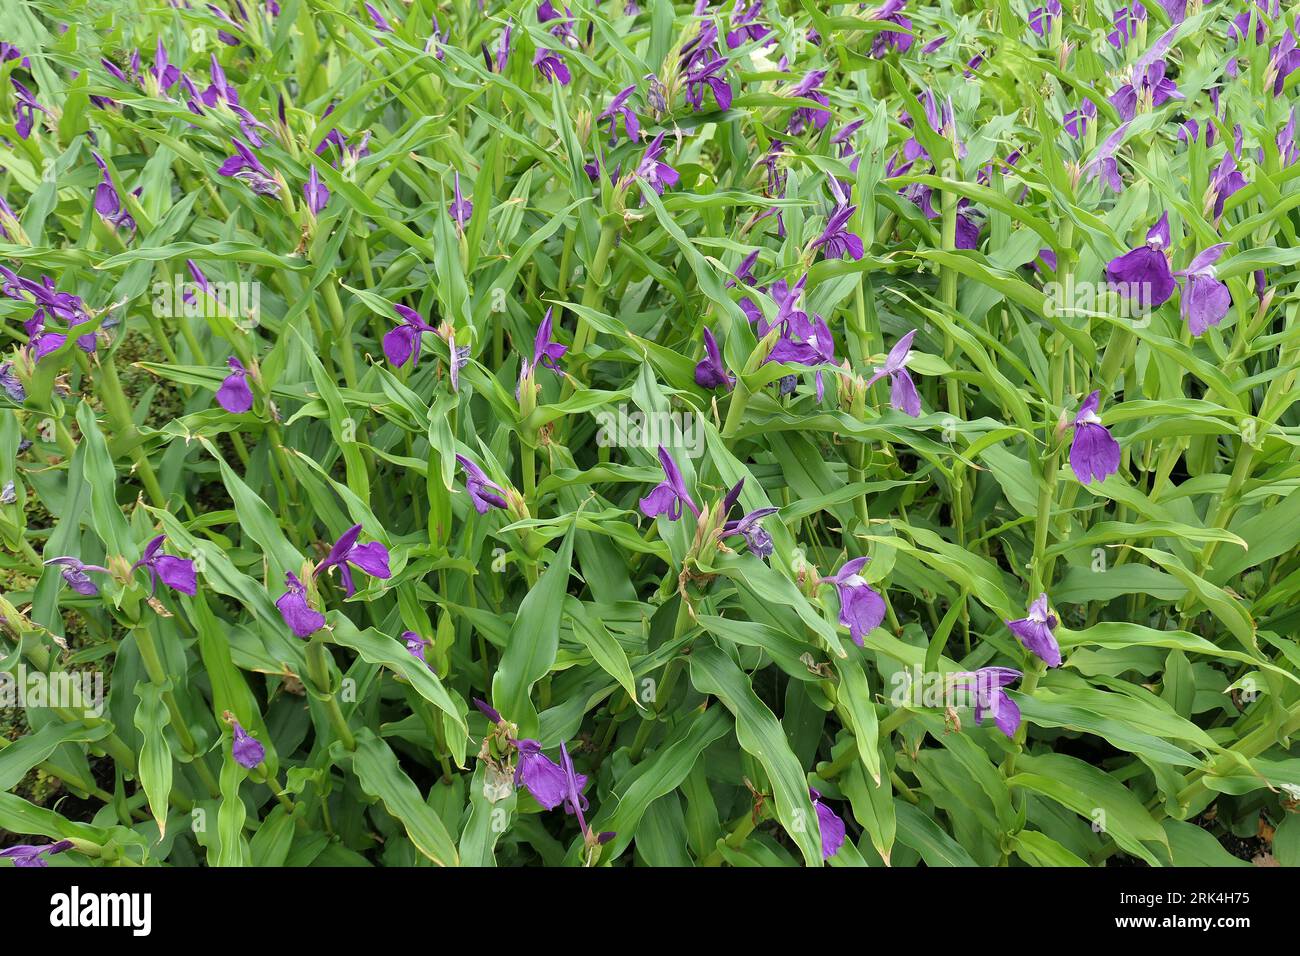 Primo piano dei luminosi fiori viola simili alle orchidee e delle foglie a forma di lancia della pianta da giardino tuberosa perenne semi-ombra amorevole roscoea auriculata. Foto Stock